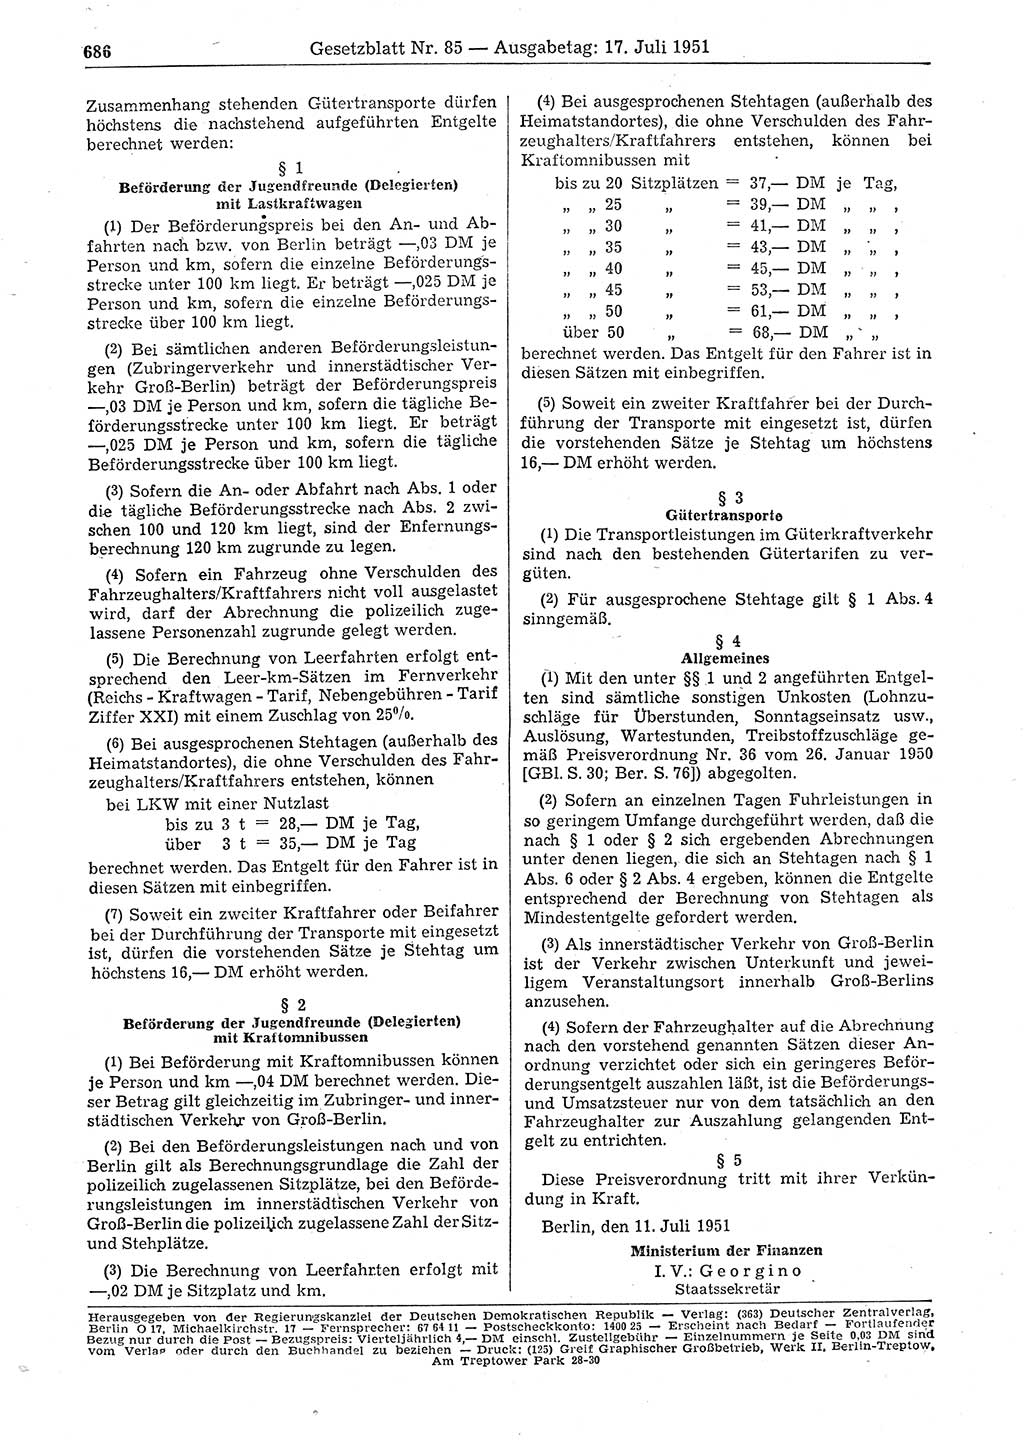 Gesetzblatt (GBl.) der Deutschen Demokratischen Republik (DDR) 1951, Seite 686 (GBl. DDR 1951, S. 686)